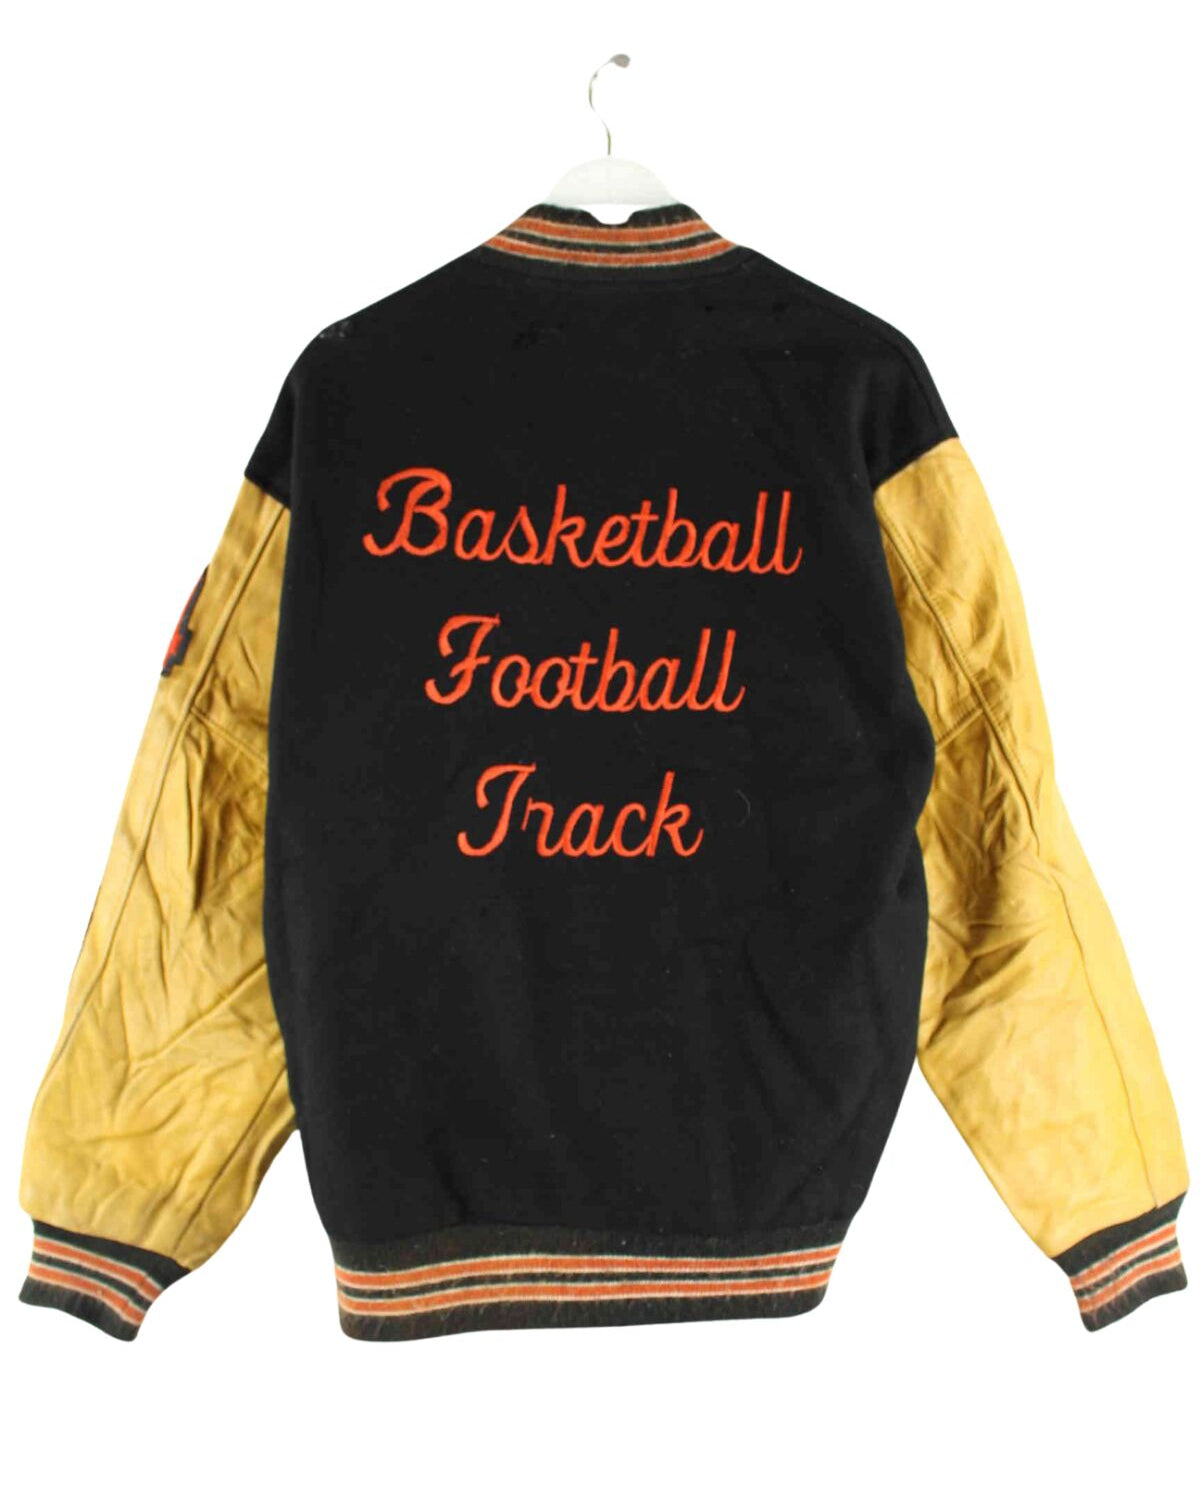 Vintage 80s Vintage Basketball Embroidered Leder College Jacke Schwarz L (back image)